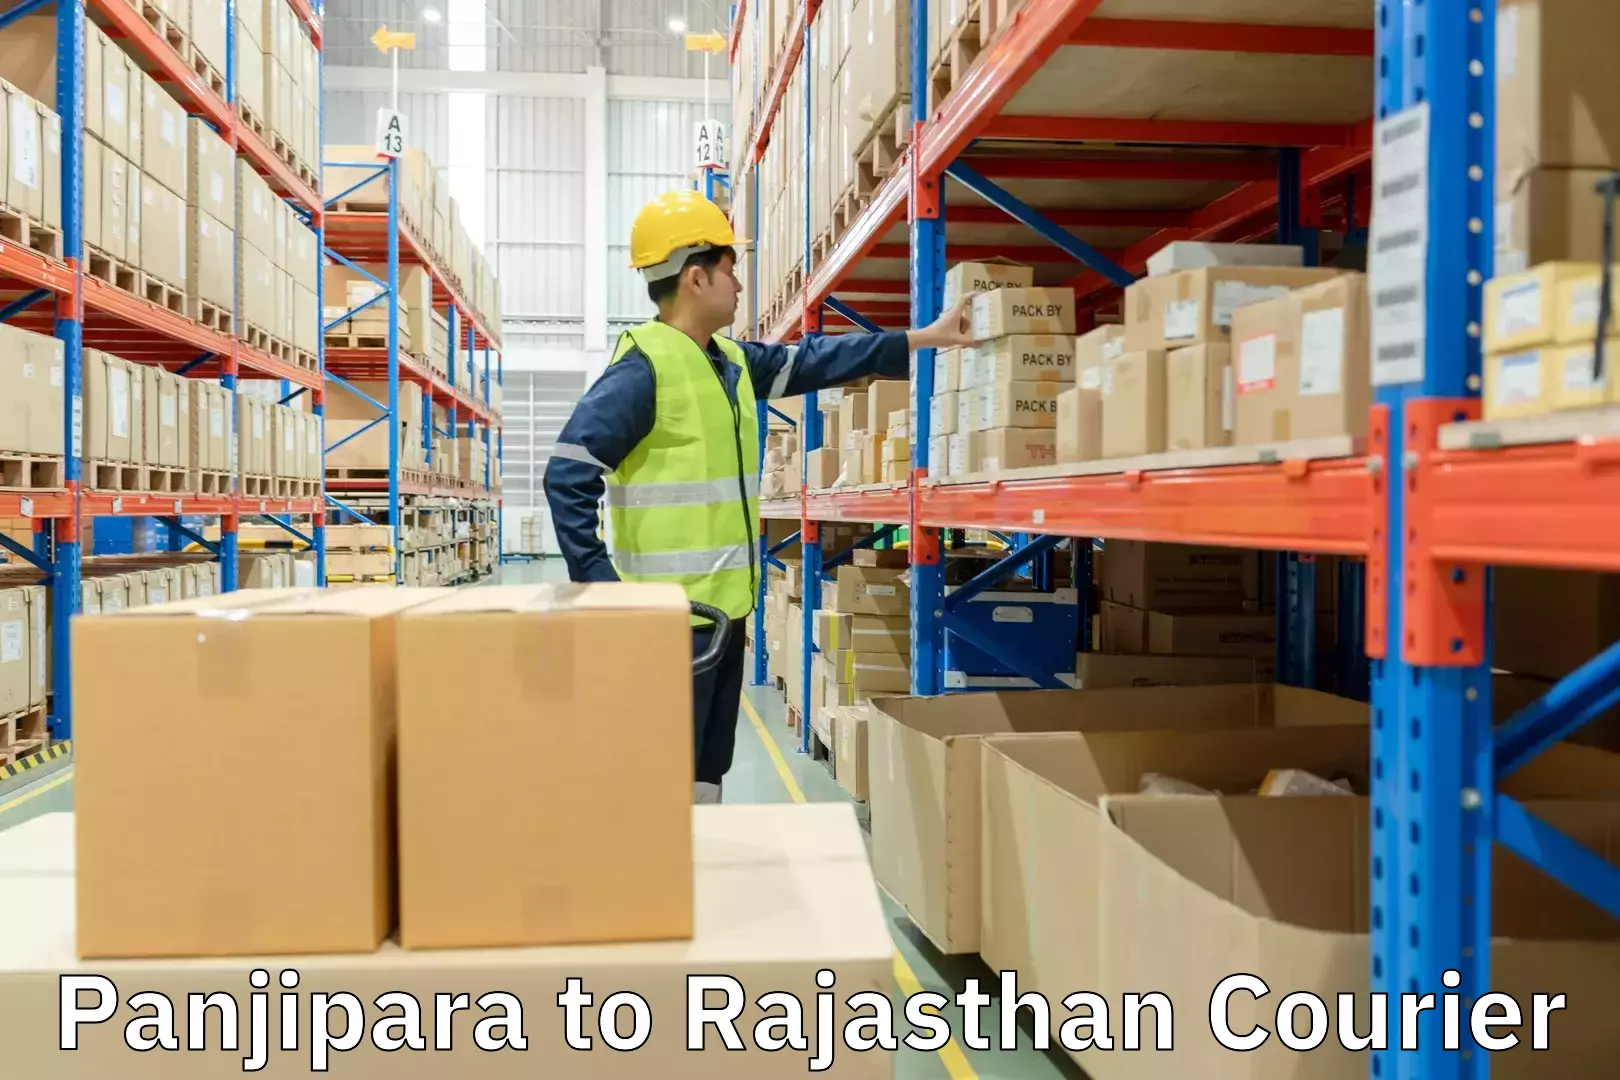 High-speed parcel service Panjipara to Rajasthan